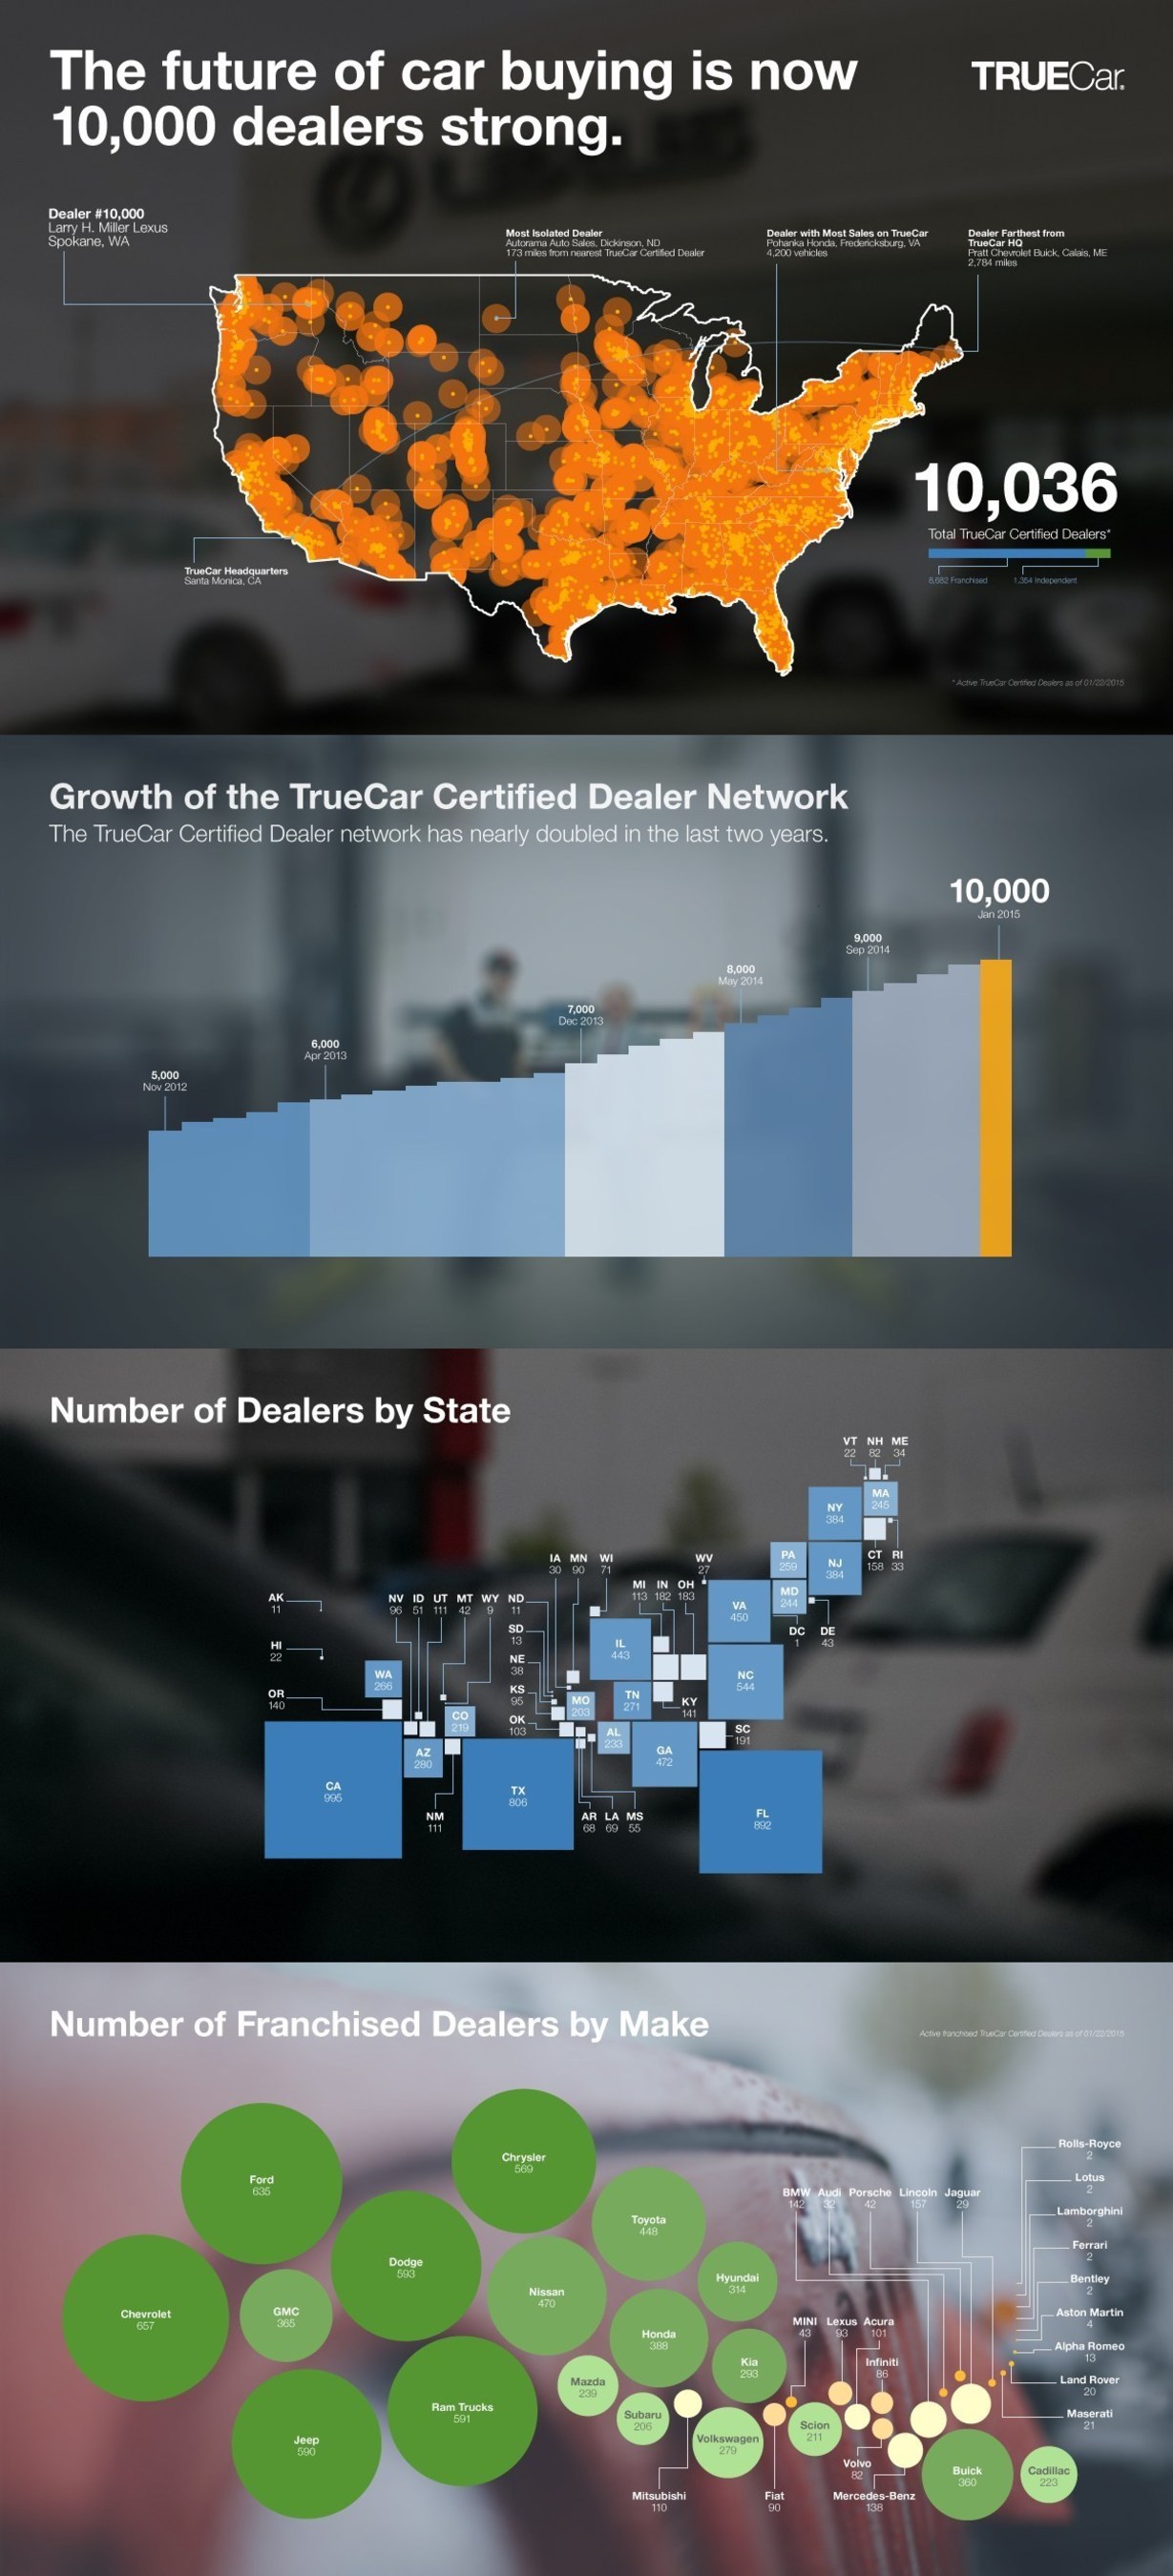 TrueCar dealer network count surpasses 10,000